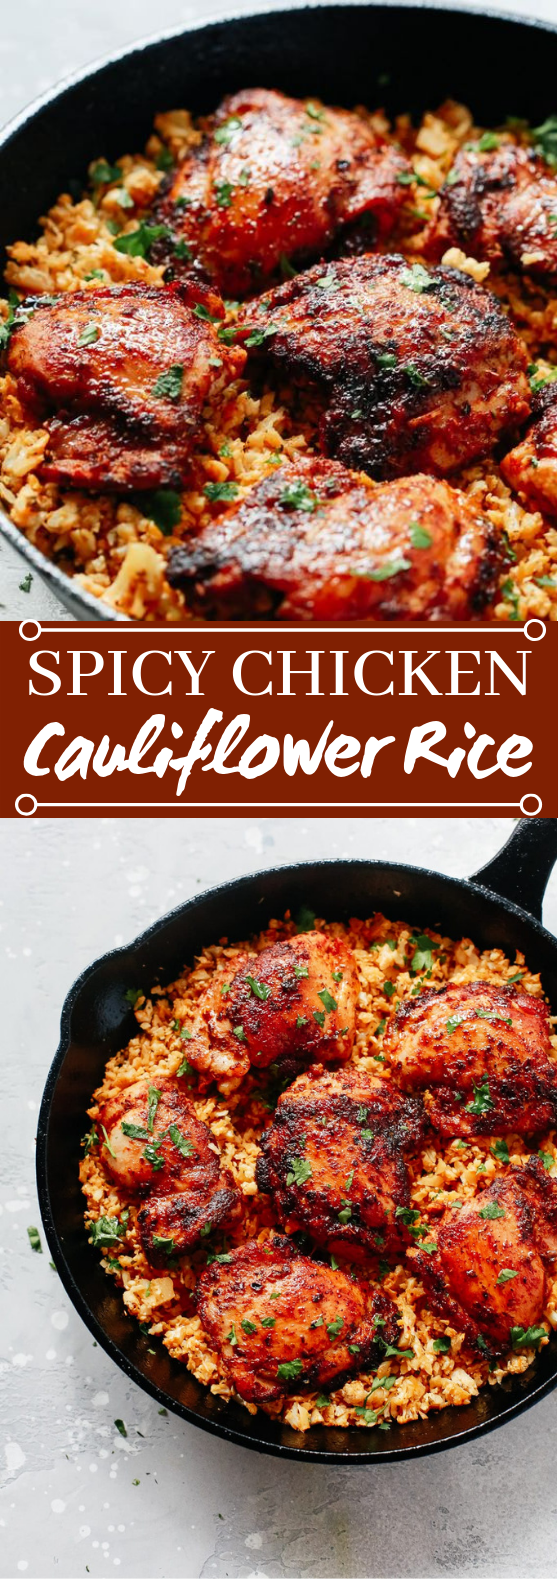 Spicy Chicken with Cauliflower Rice #paleo #glutenfree